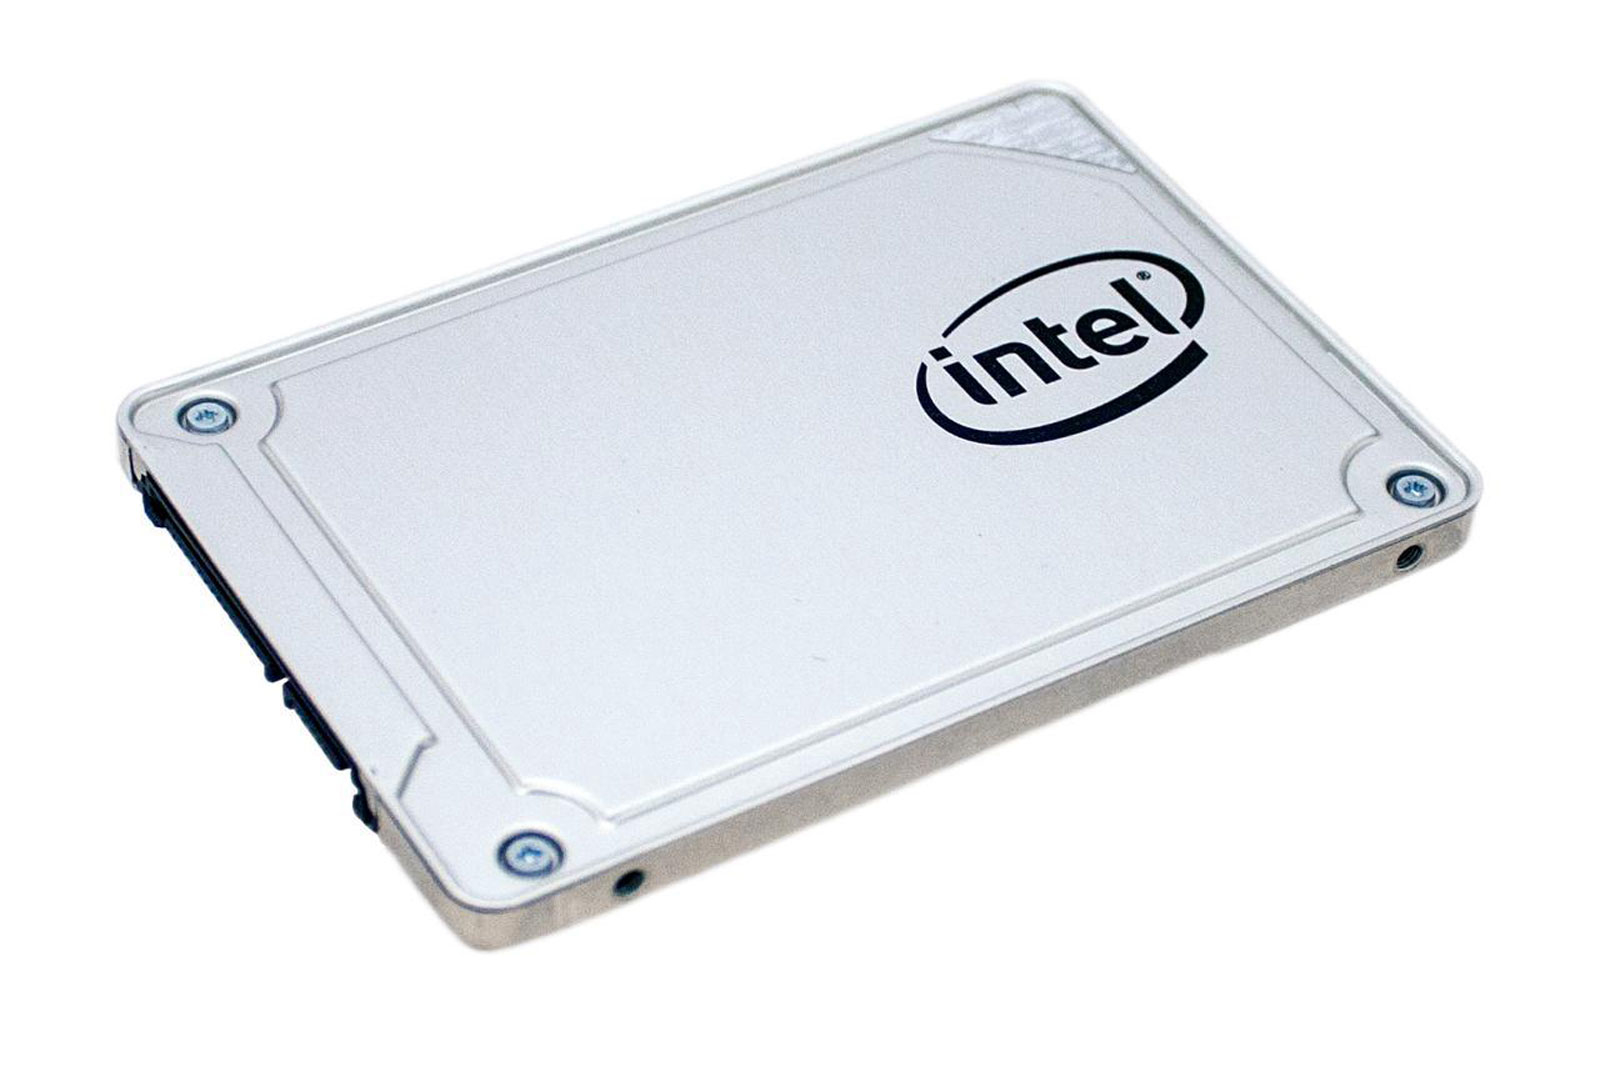 545s er Intels nyeste forbruker-SSD.